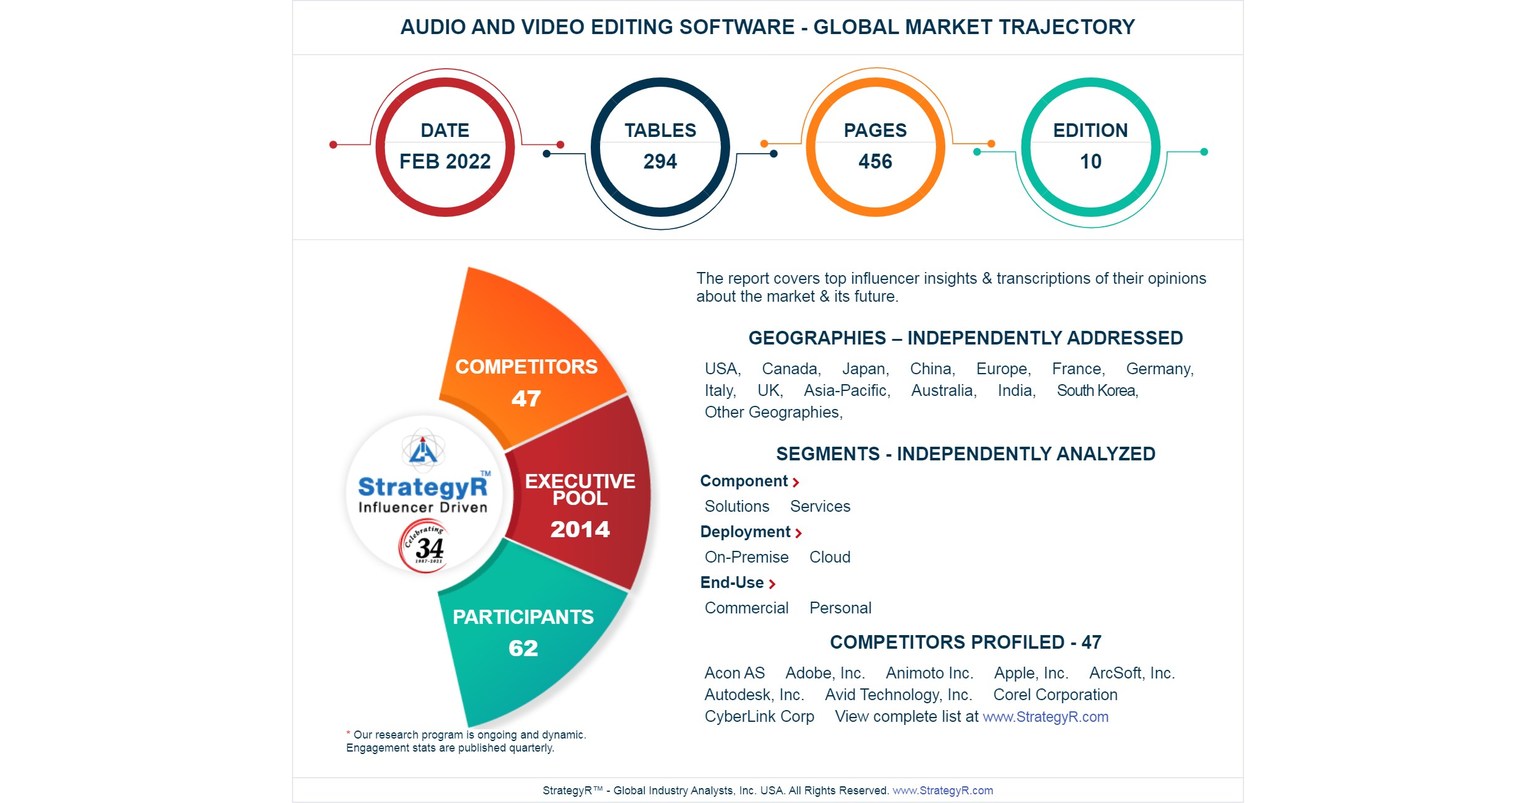 Com um tamanho de mercado estimado em US$ 4,8 bilhões até 2026, representa uma perspectiva saudável para o mercado global de software de edição de áudio e vídeo.